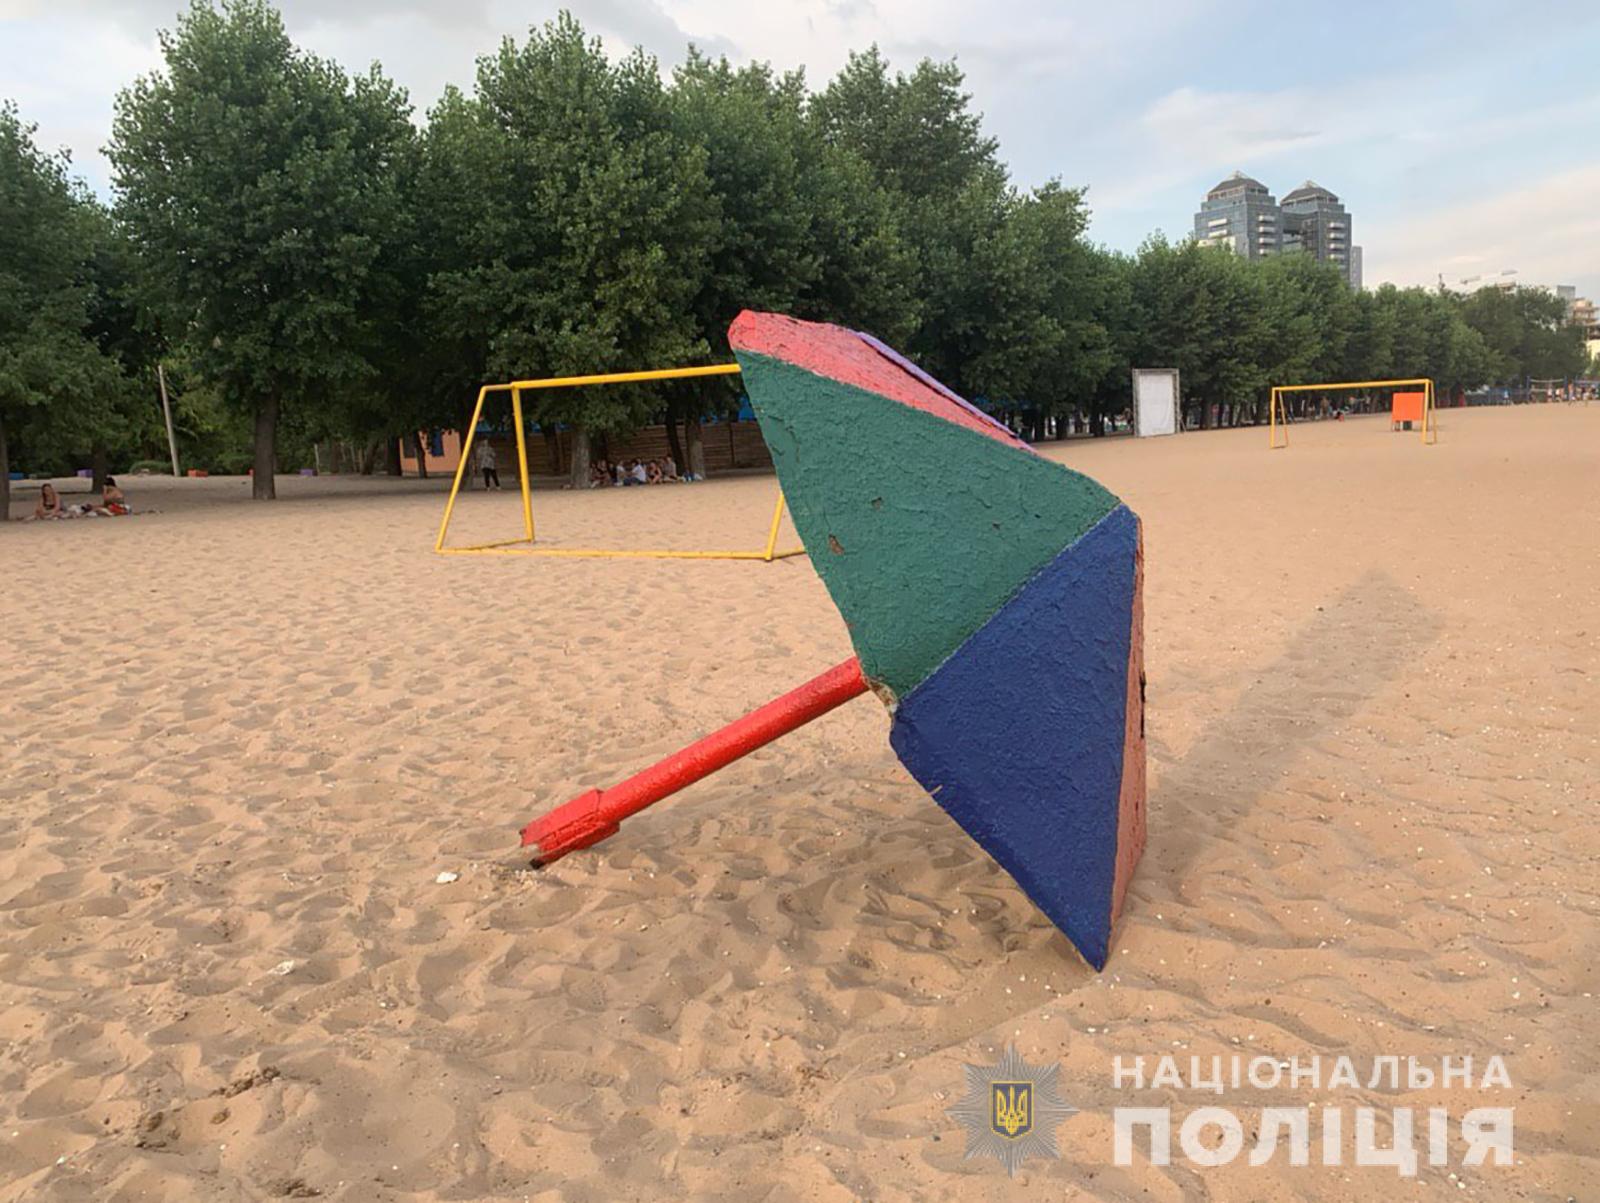 Травмирование ребенка на запорожском пляже: по факту служебной халатности КП открыто уголовное производство (ФОТО)